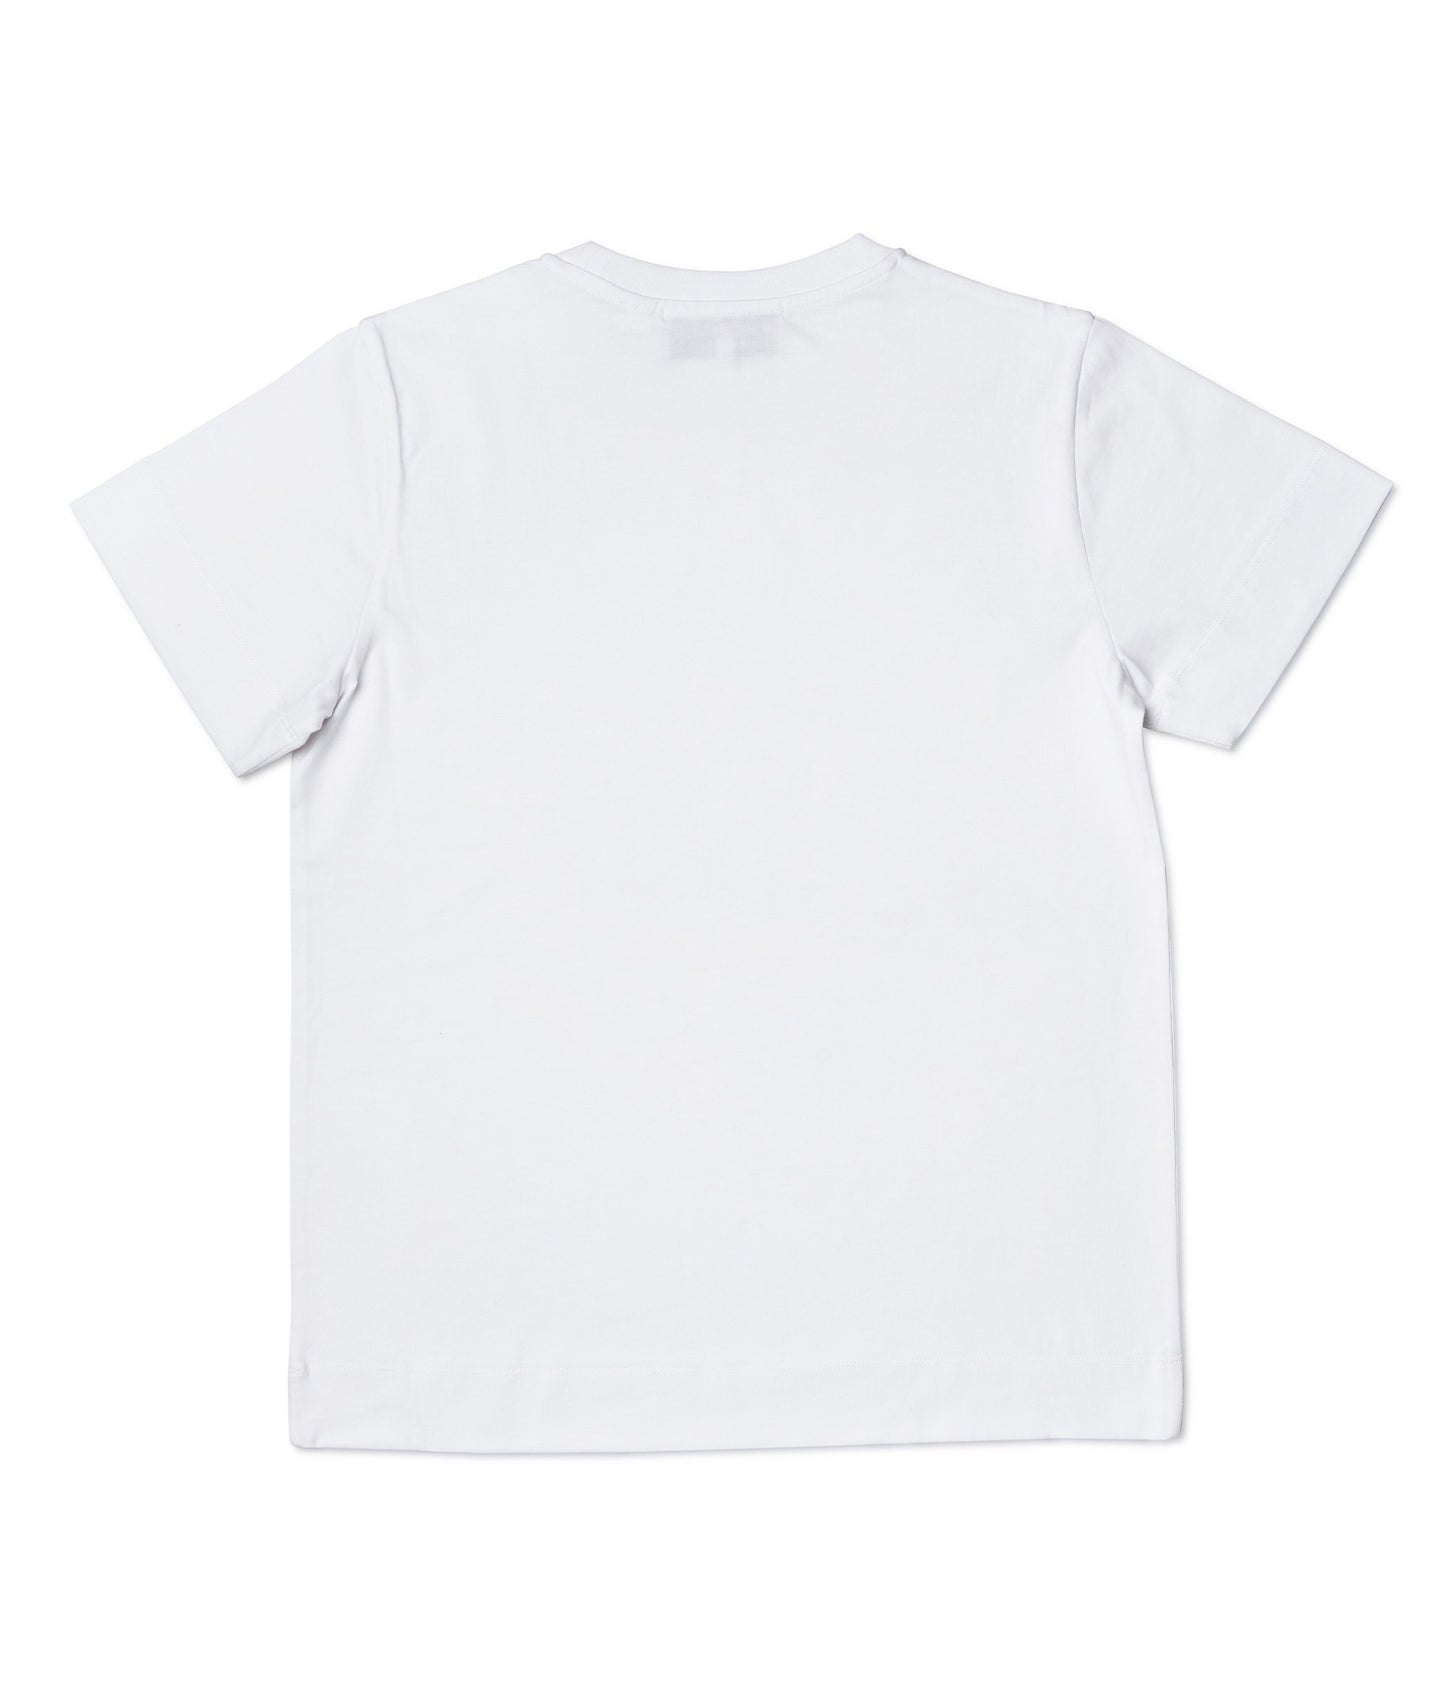 'Keep it Burning' White T-Shirt Men